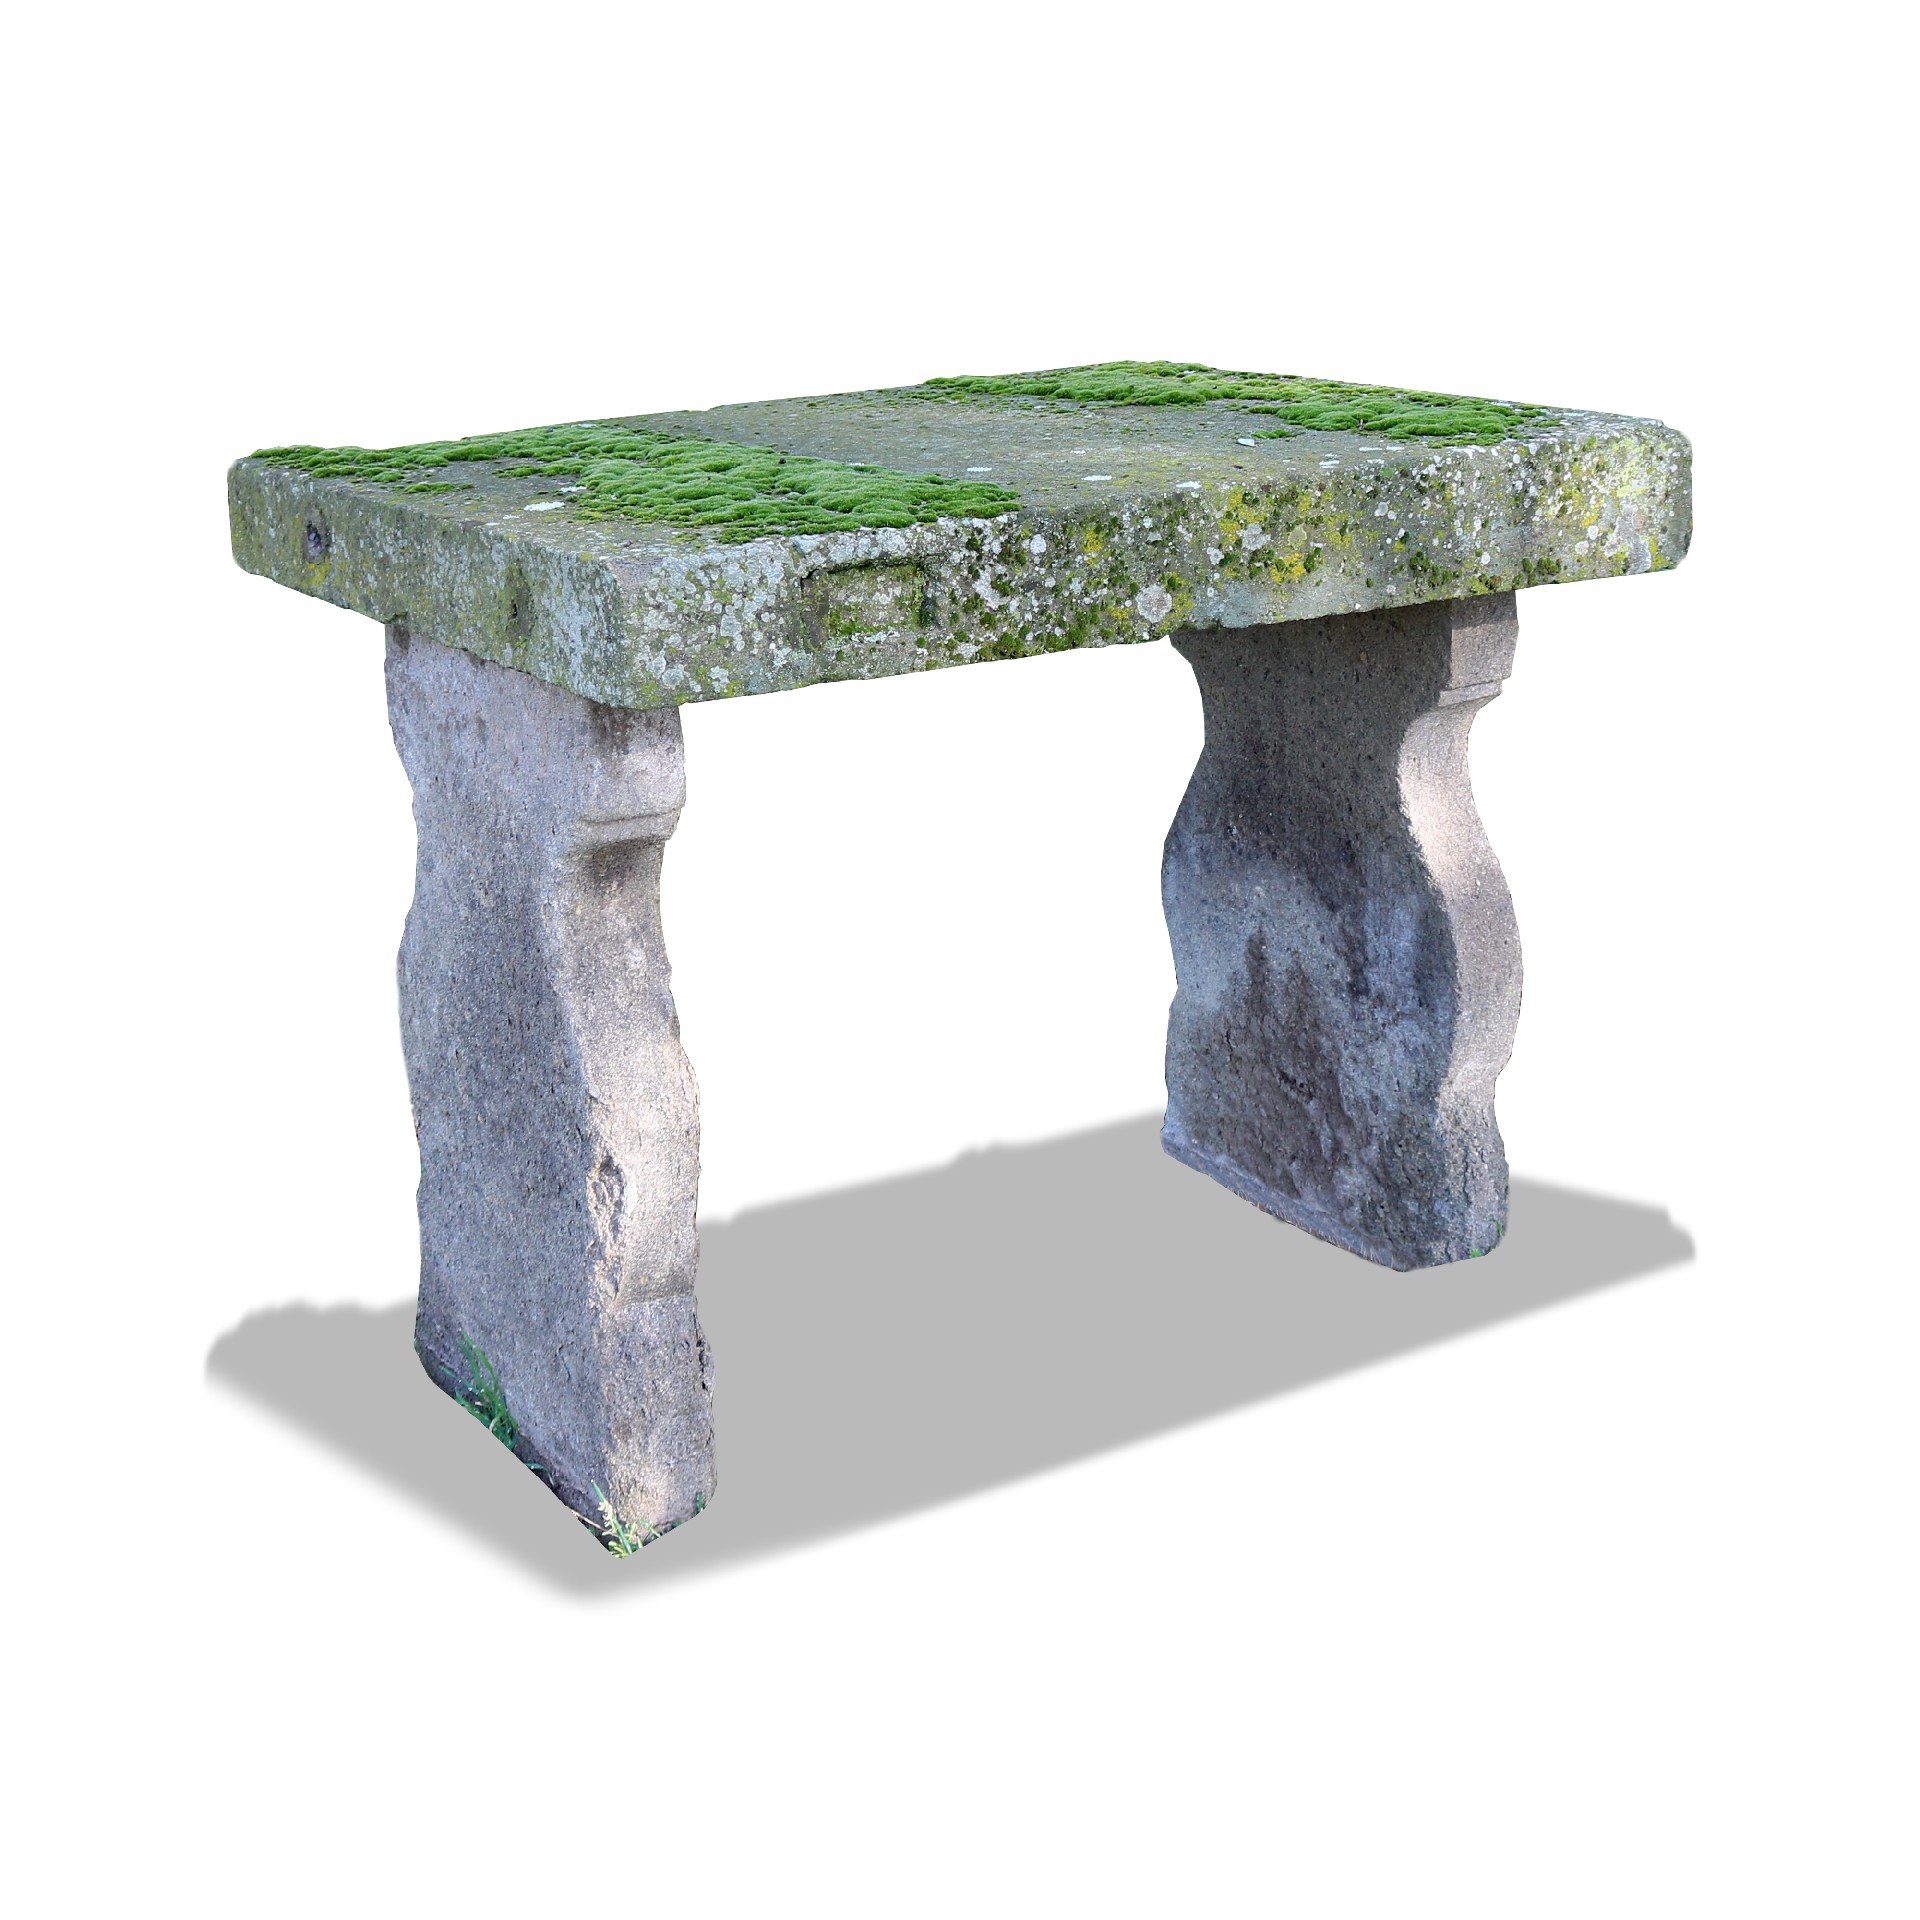 Antico tavolo in pietra. - Tavoli in vari materiali - Tavoli e complementi - Prodotti - Antichità Fiorillo